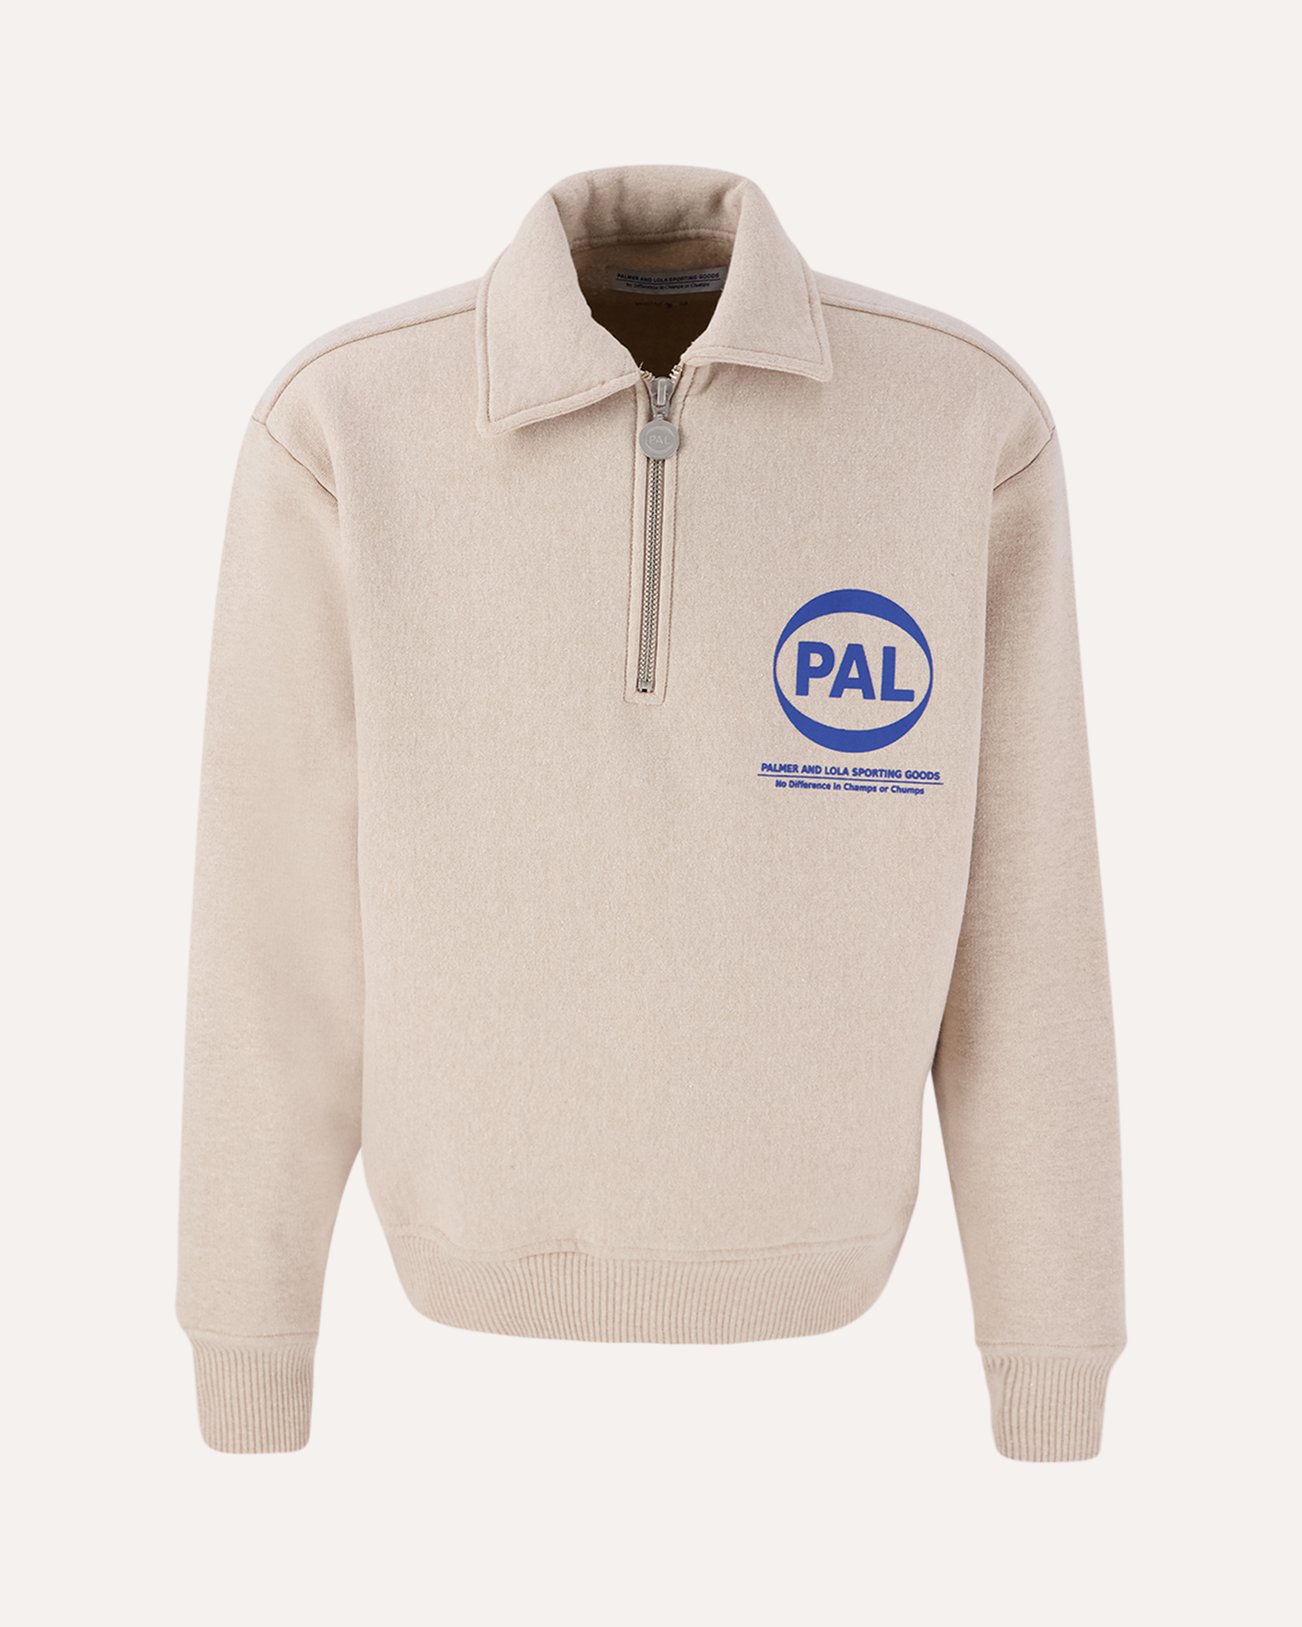 PAL Sporting Goods Coef / Pal Company Half Zip BEIGE 1